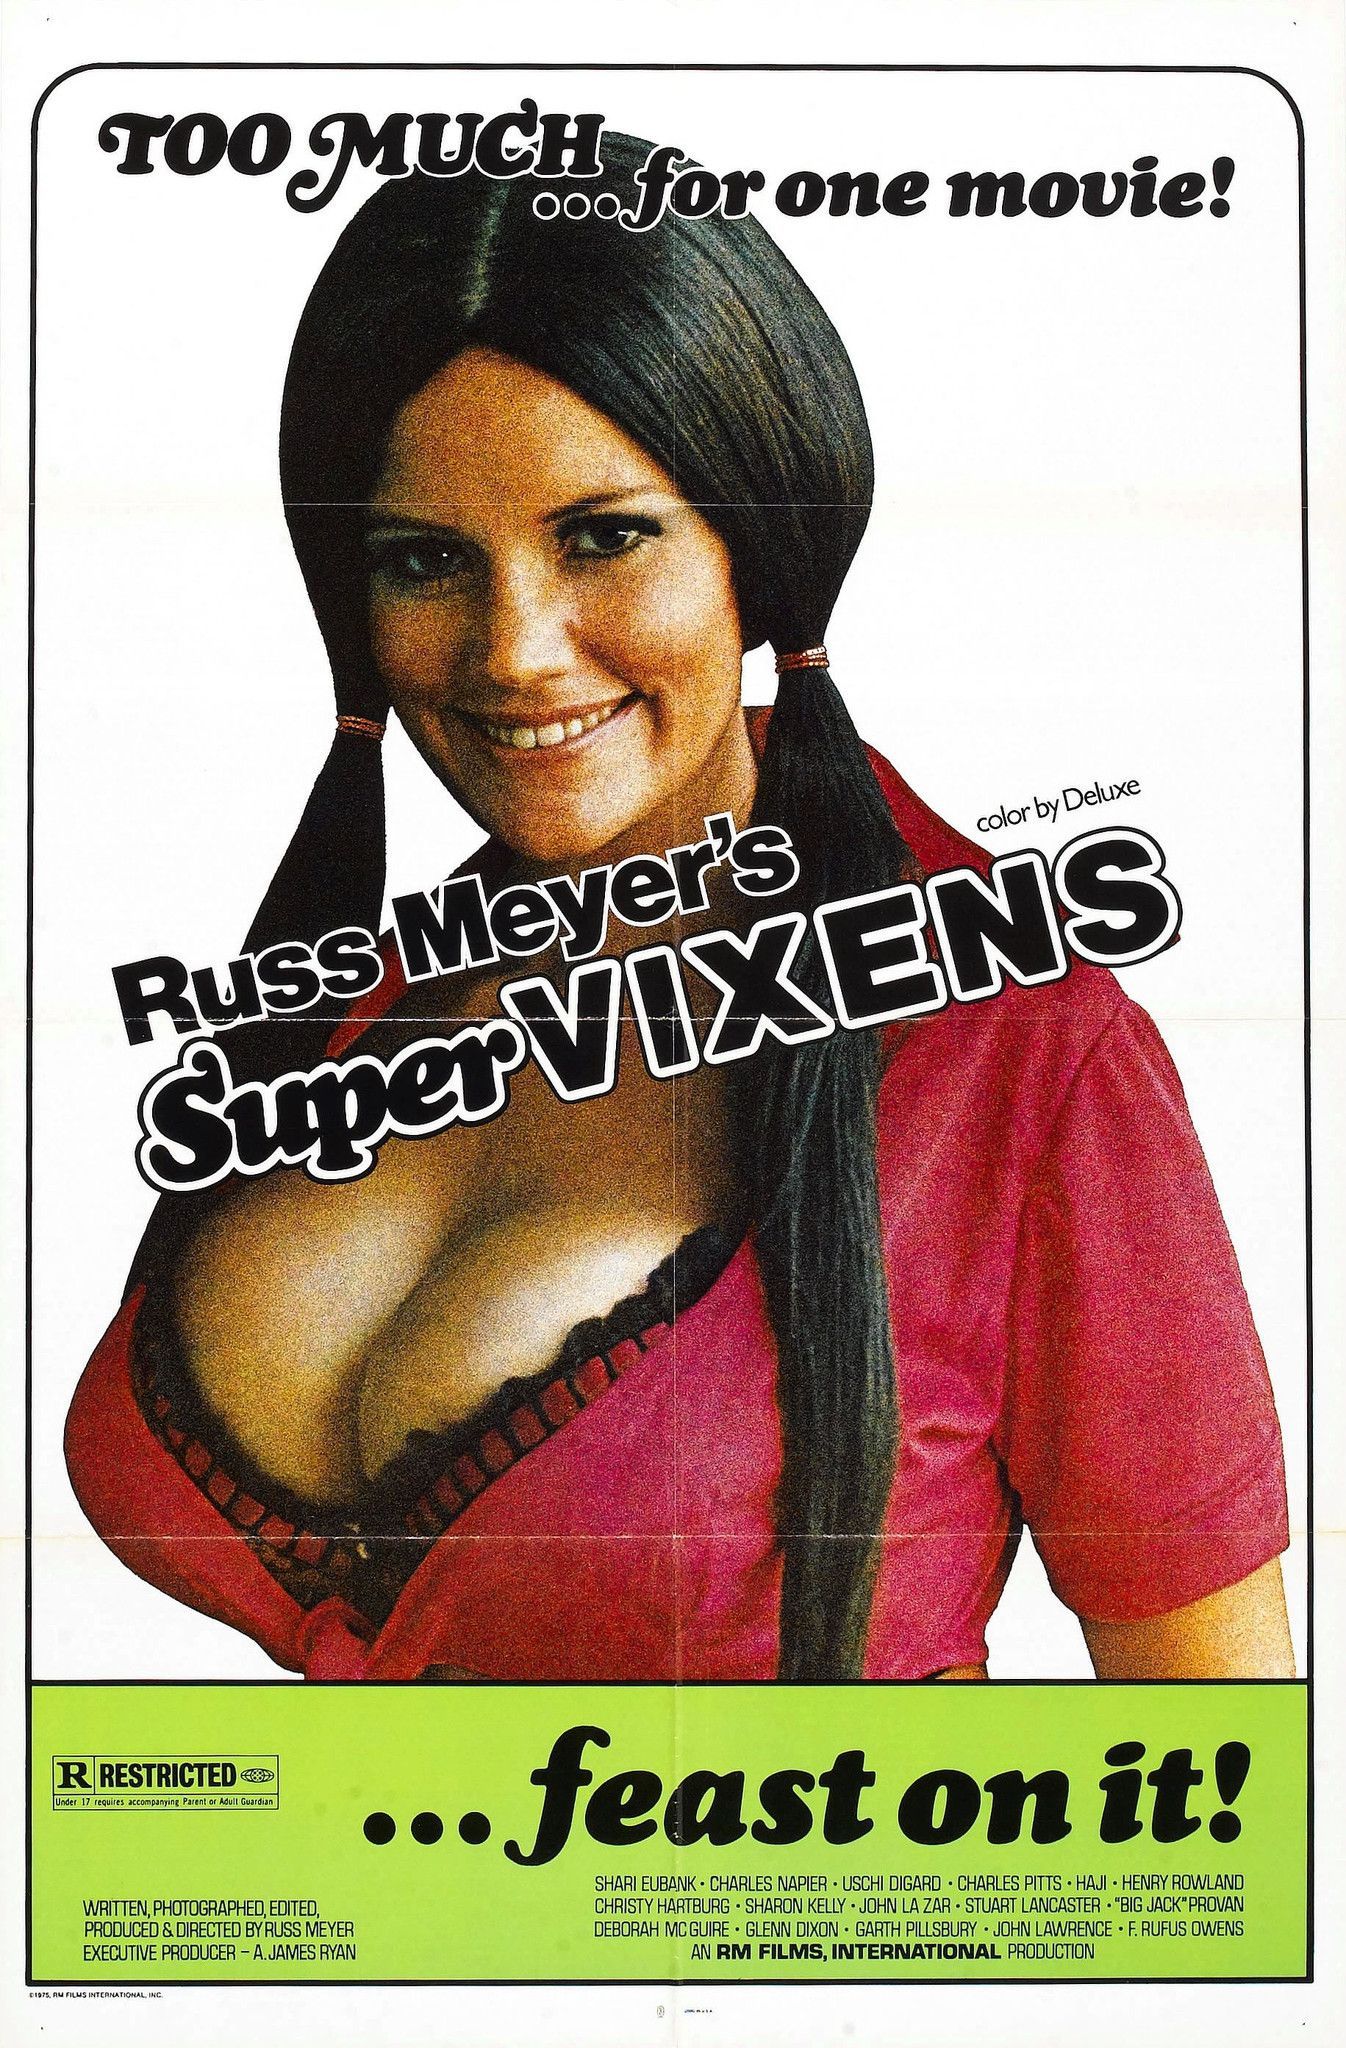 Supervixens (1975) DVD Filmplakate, Werbung, Musik, Edel, Braves Mädchen, Kultfilme, Filme, Filmposter, Poster